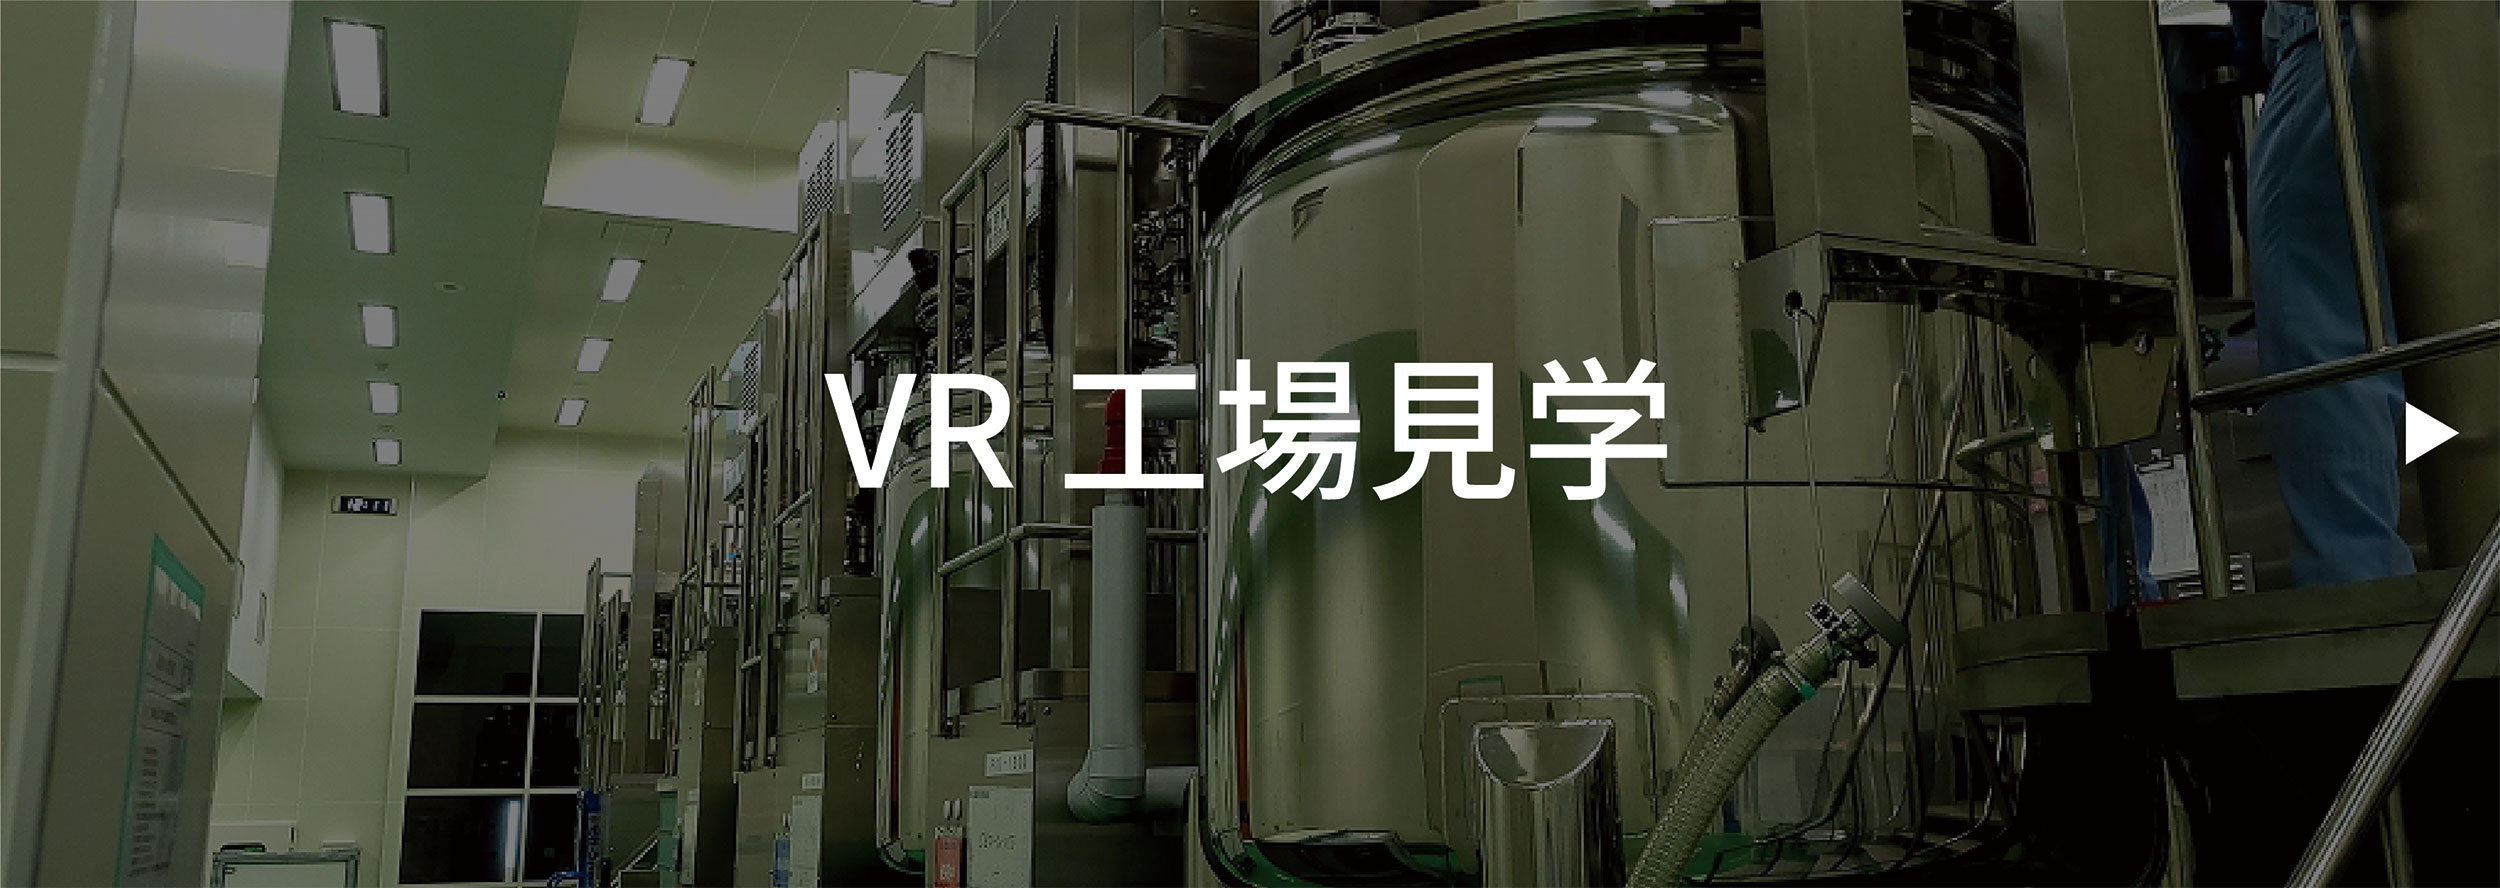 VR工場見学